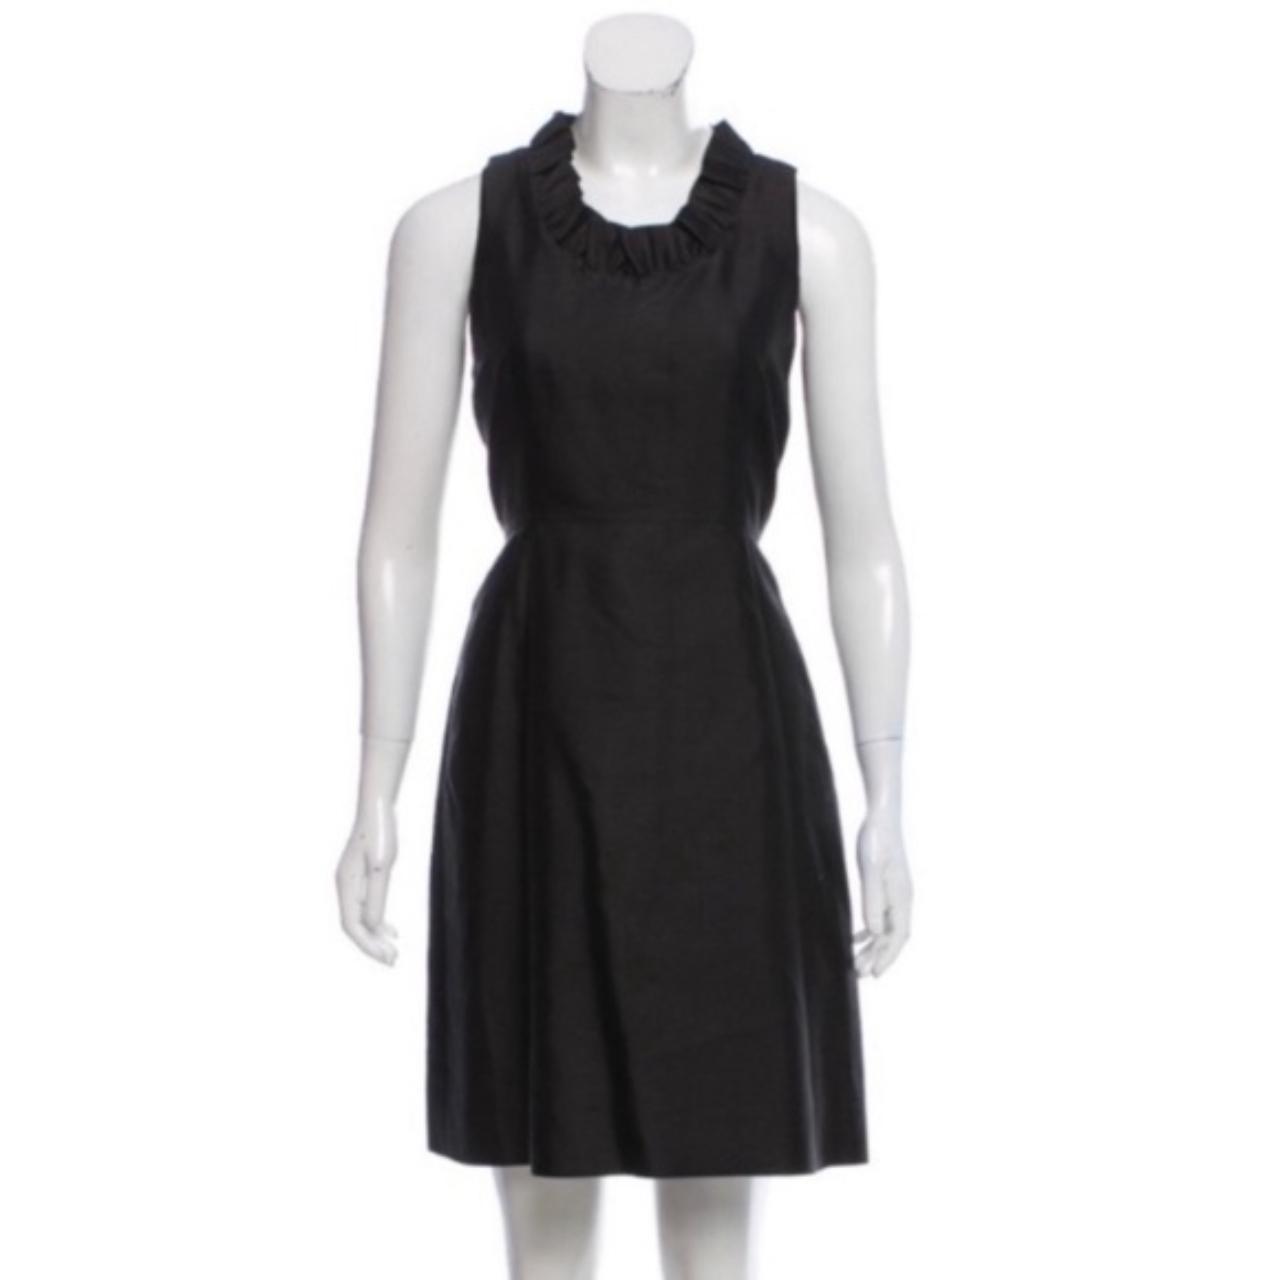 Kate Spade New York Women's Black Dress | Depop